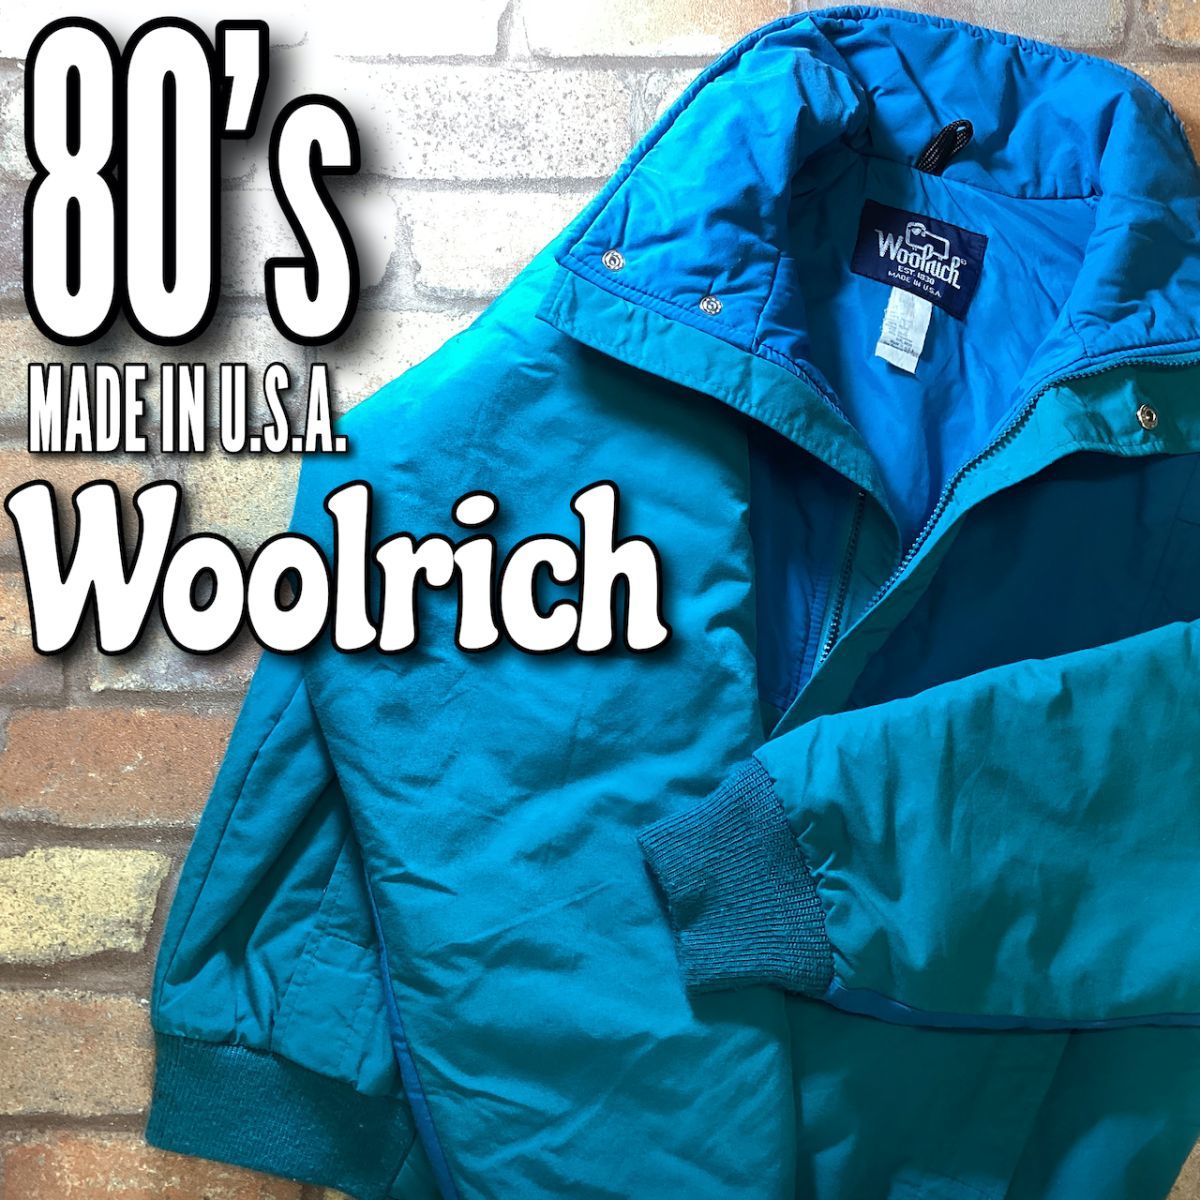 おすすめネット ウールリッチ woolrich 80s ブルゾン made in USA